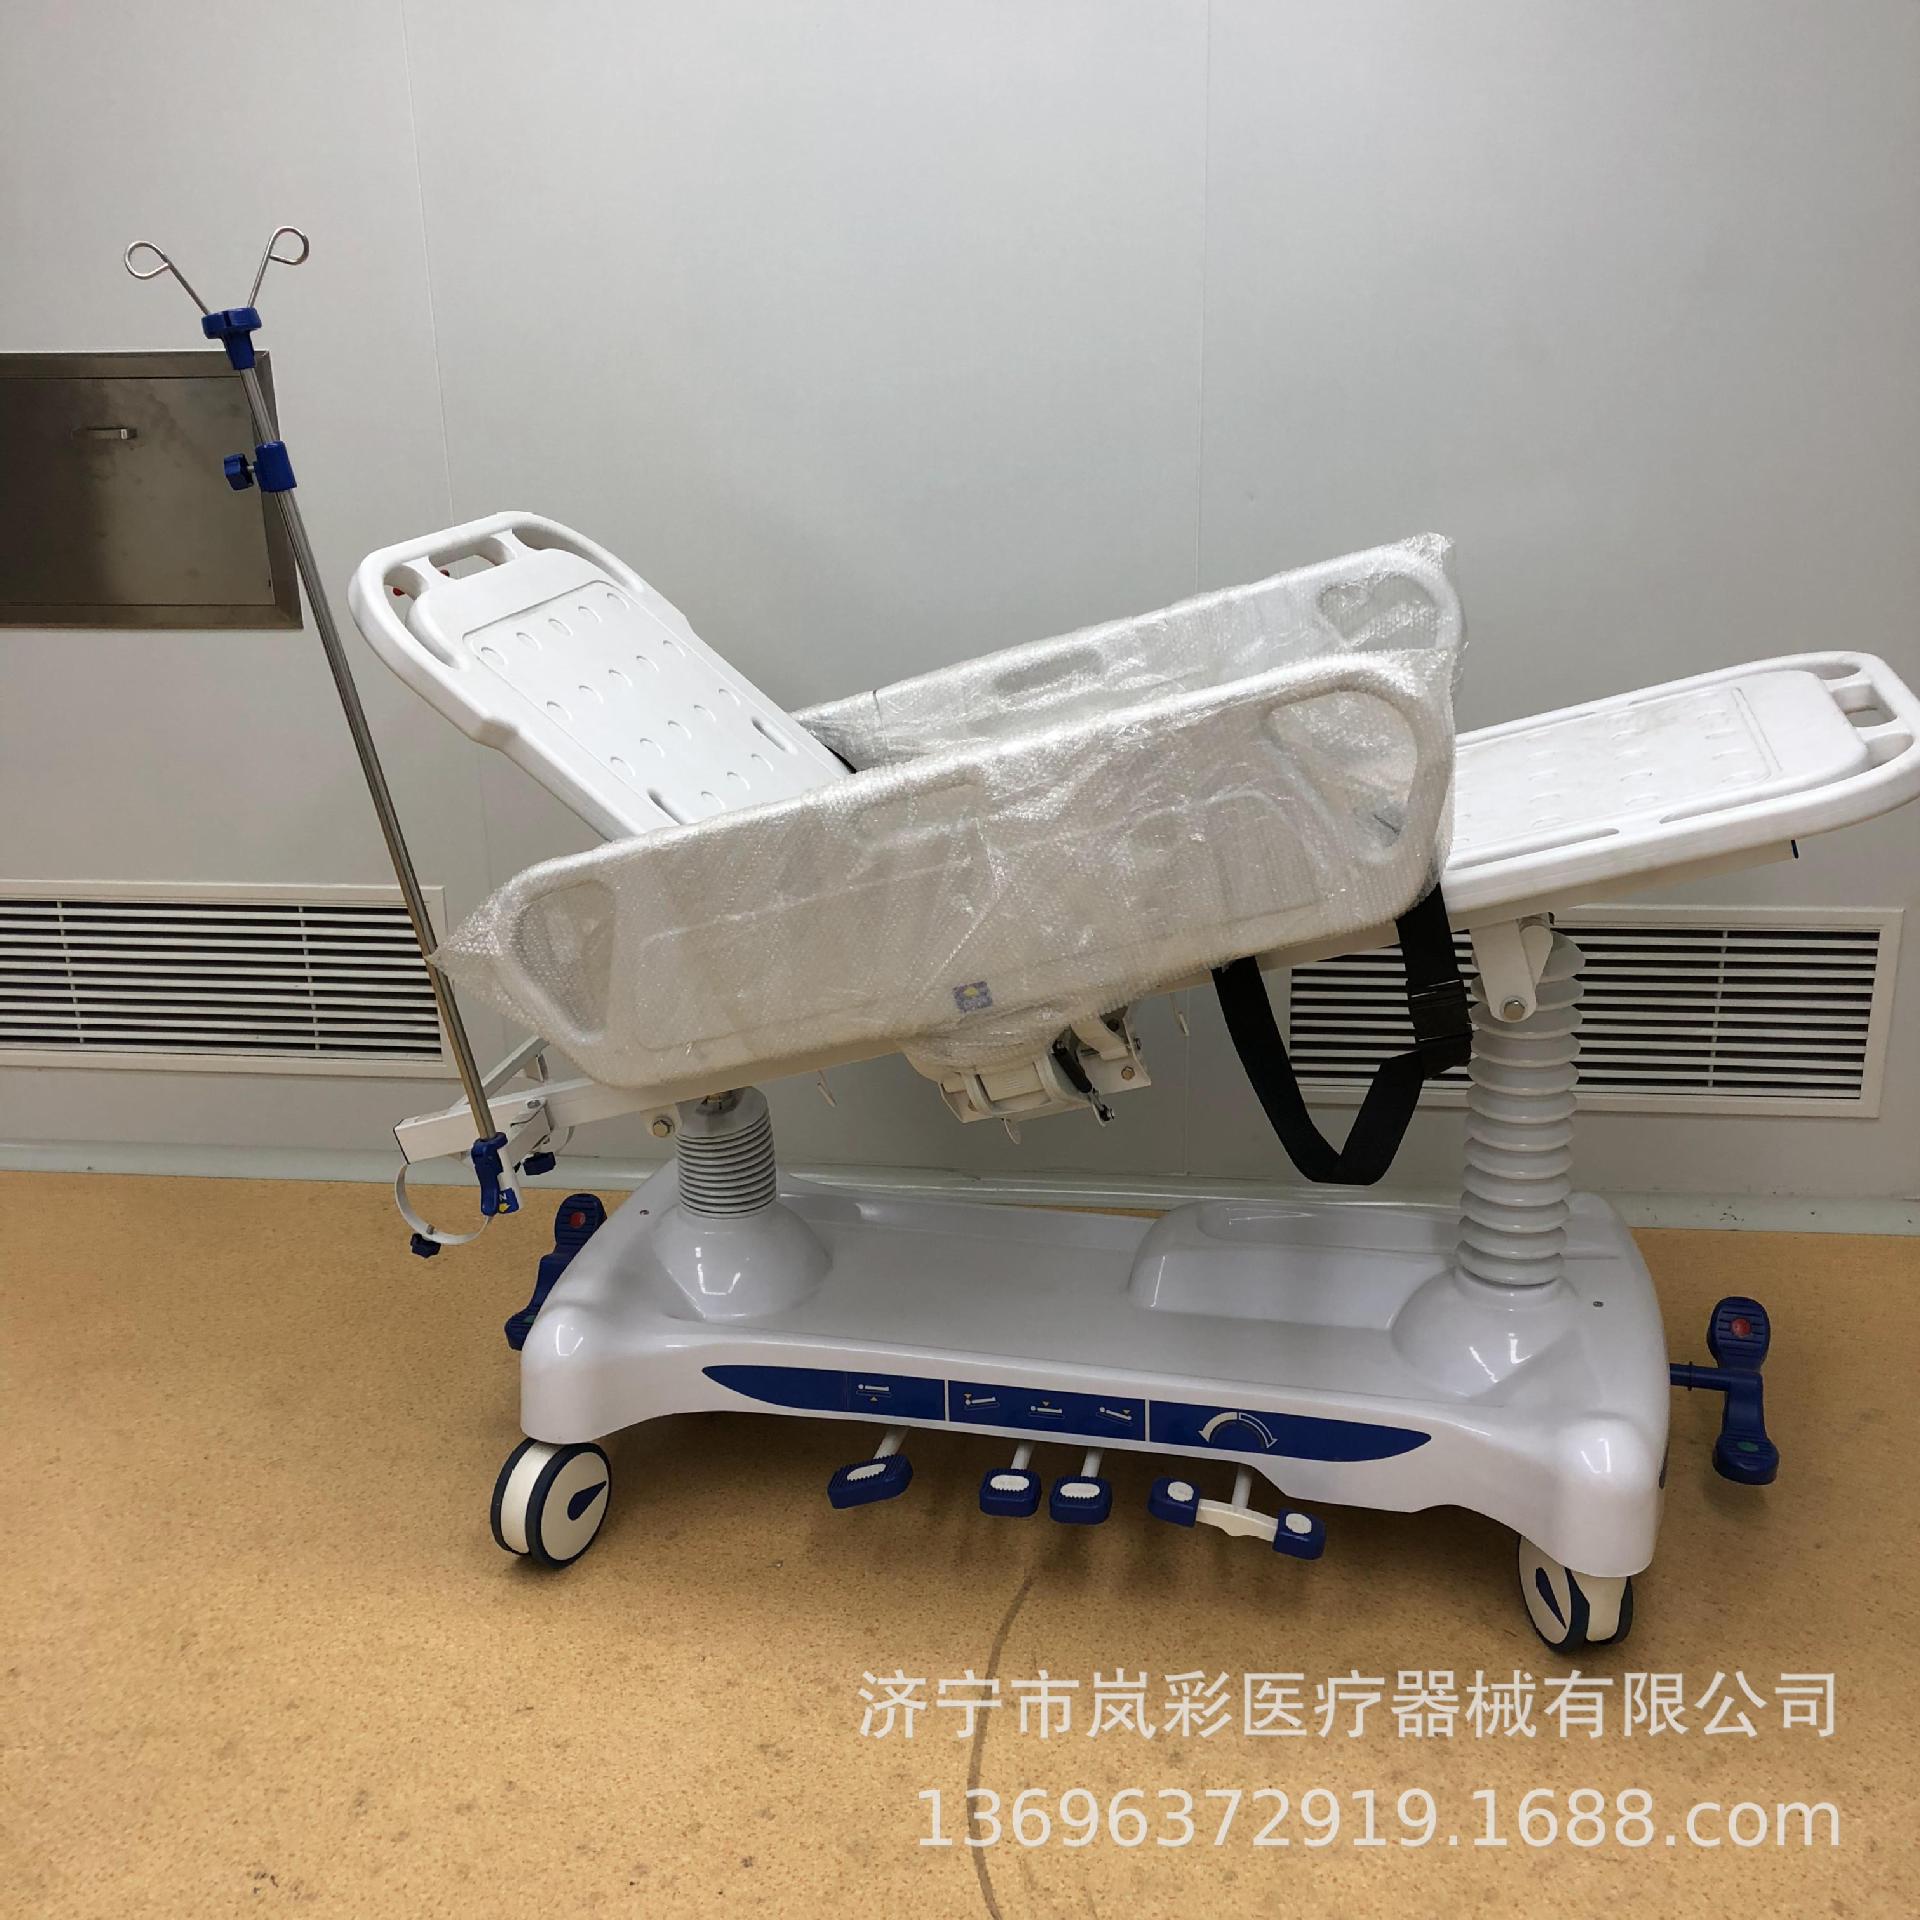 【2021 红点奖】Defecation Nursing Machine / 排便护理机 - 普象网